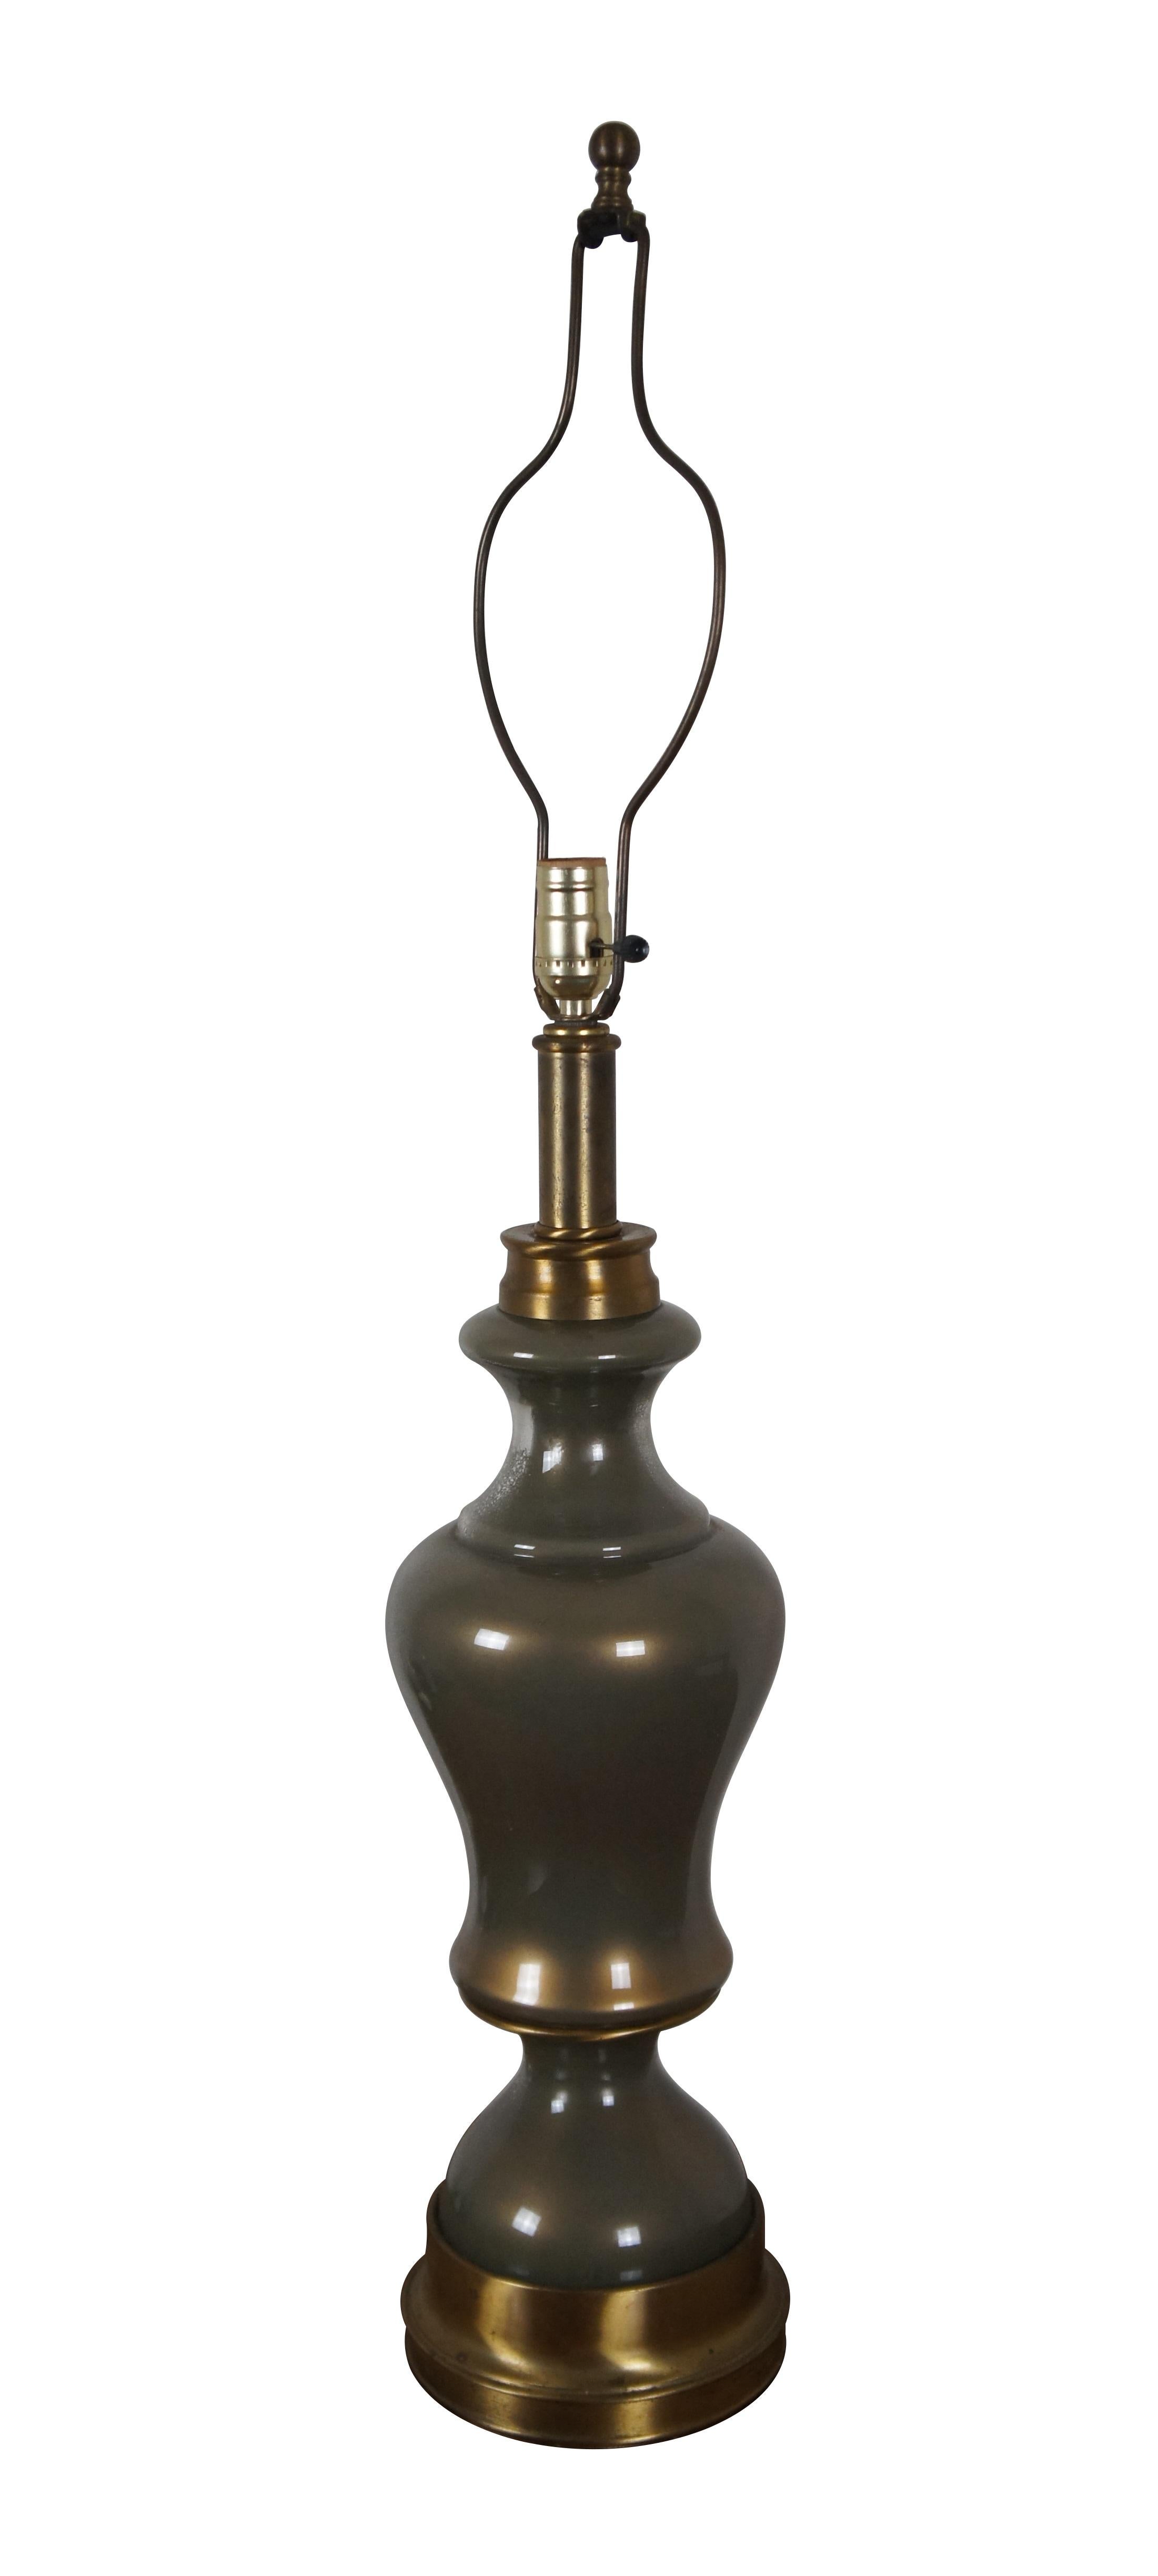 Tischlampe aus Glas und Messing im Hollywood-Regency-Stil mit runder, schlangenförmiger Form.

Abmessungen:
7,25